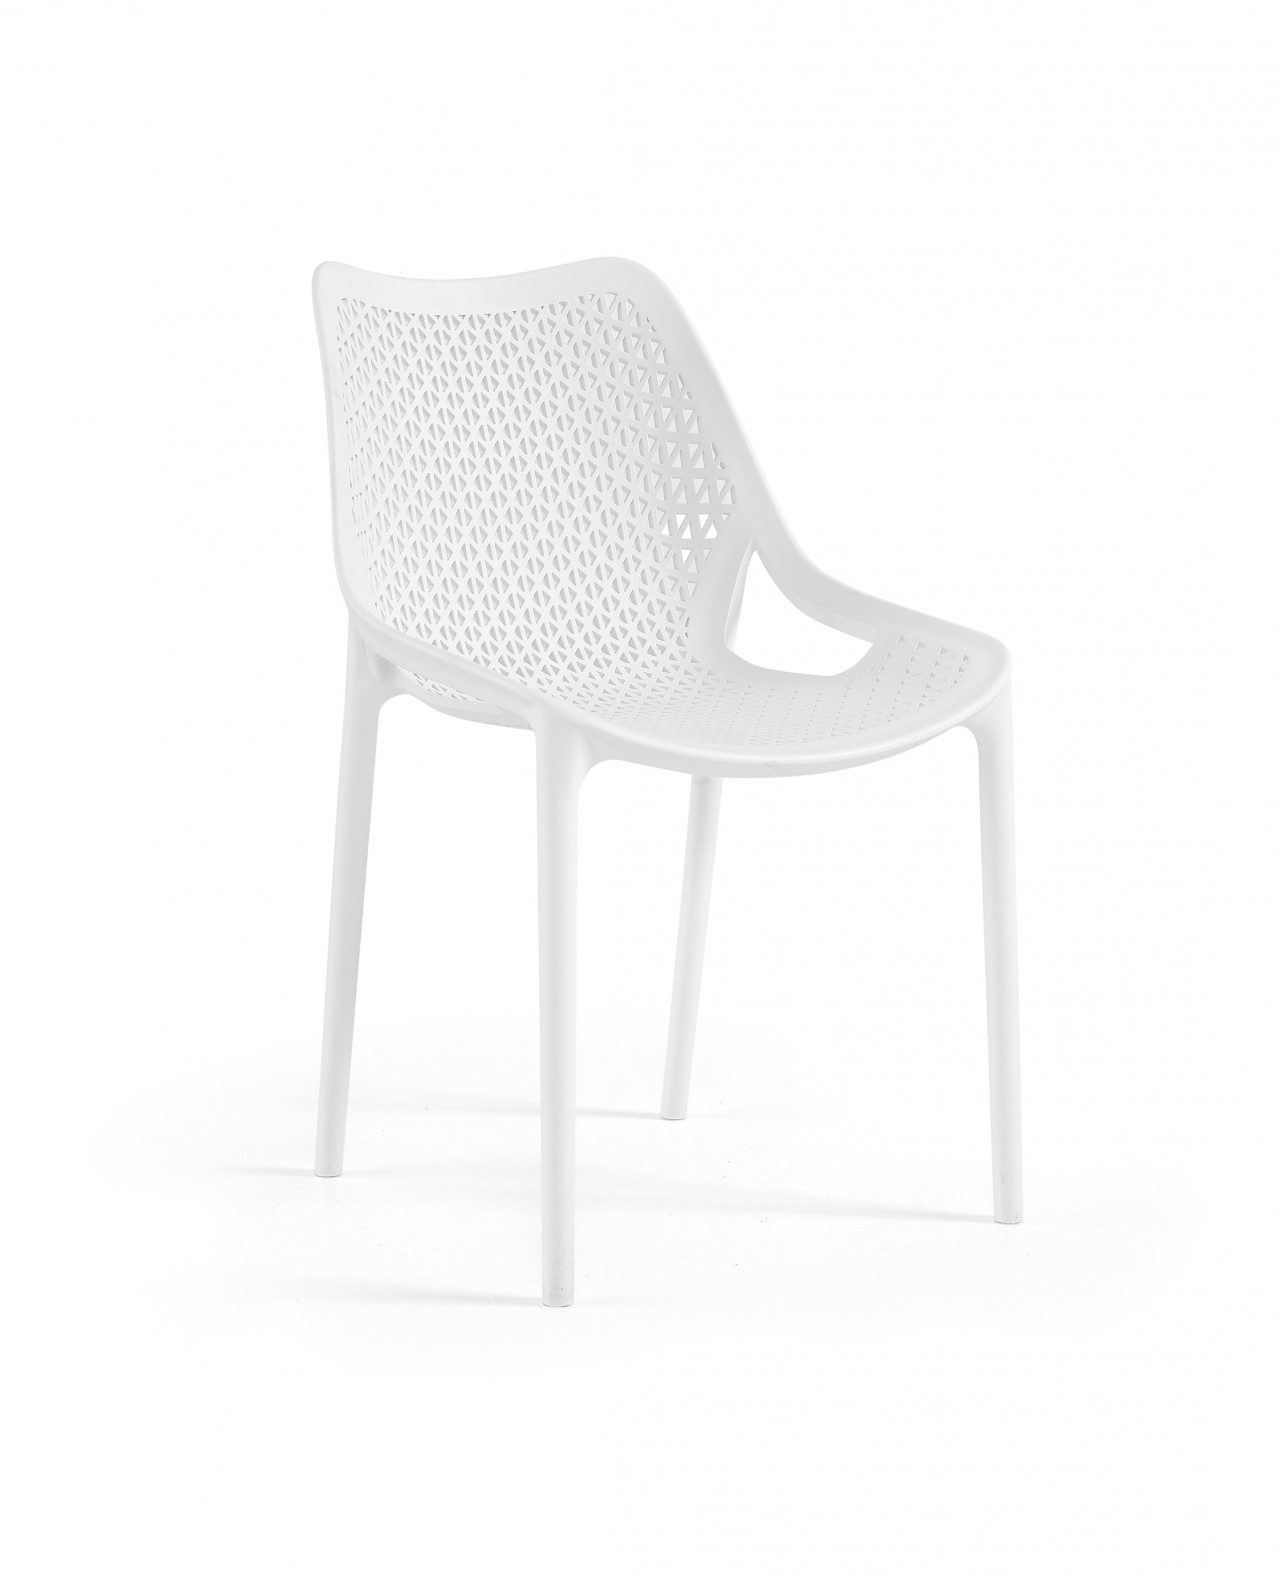 Descubra a cadeira Oxy conforto e design moderno para o seu dia-a-dia!